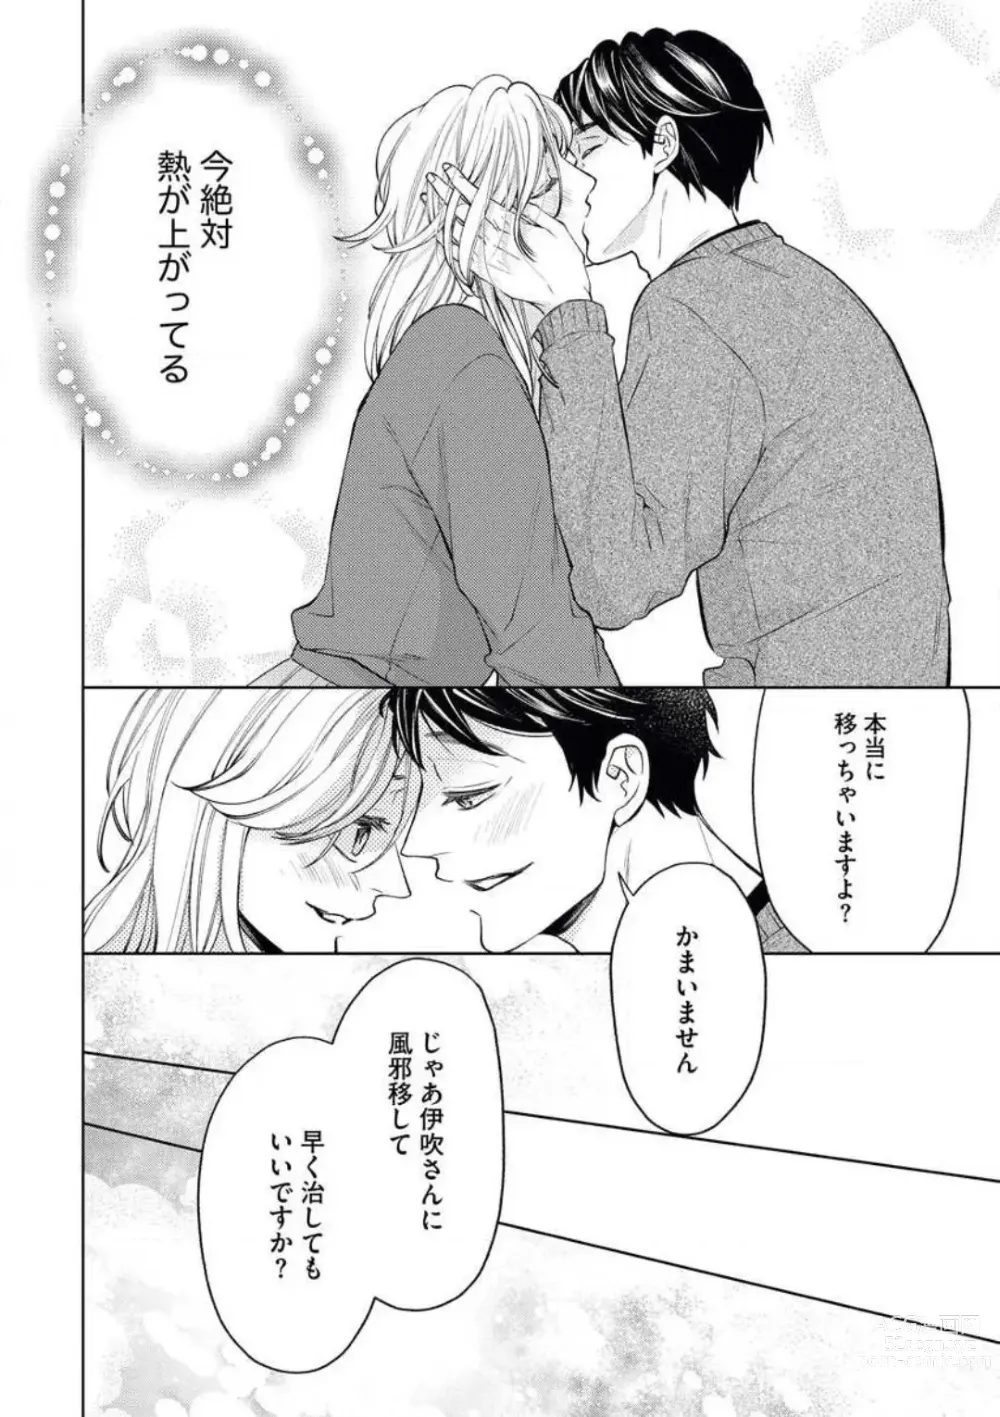 Page 28 of manga Anata o Kudasai!